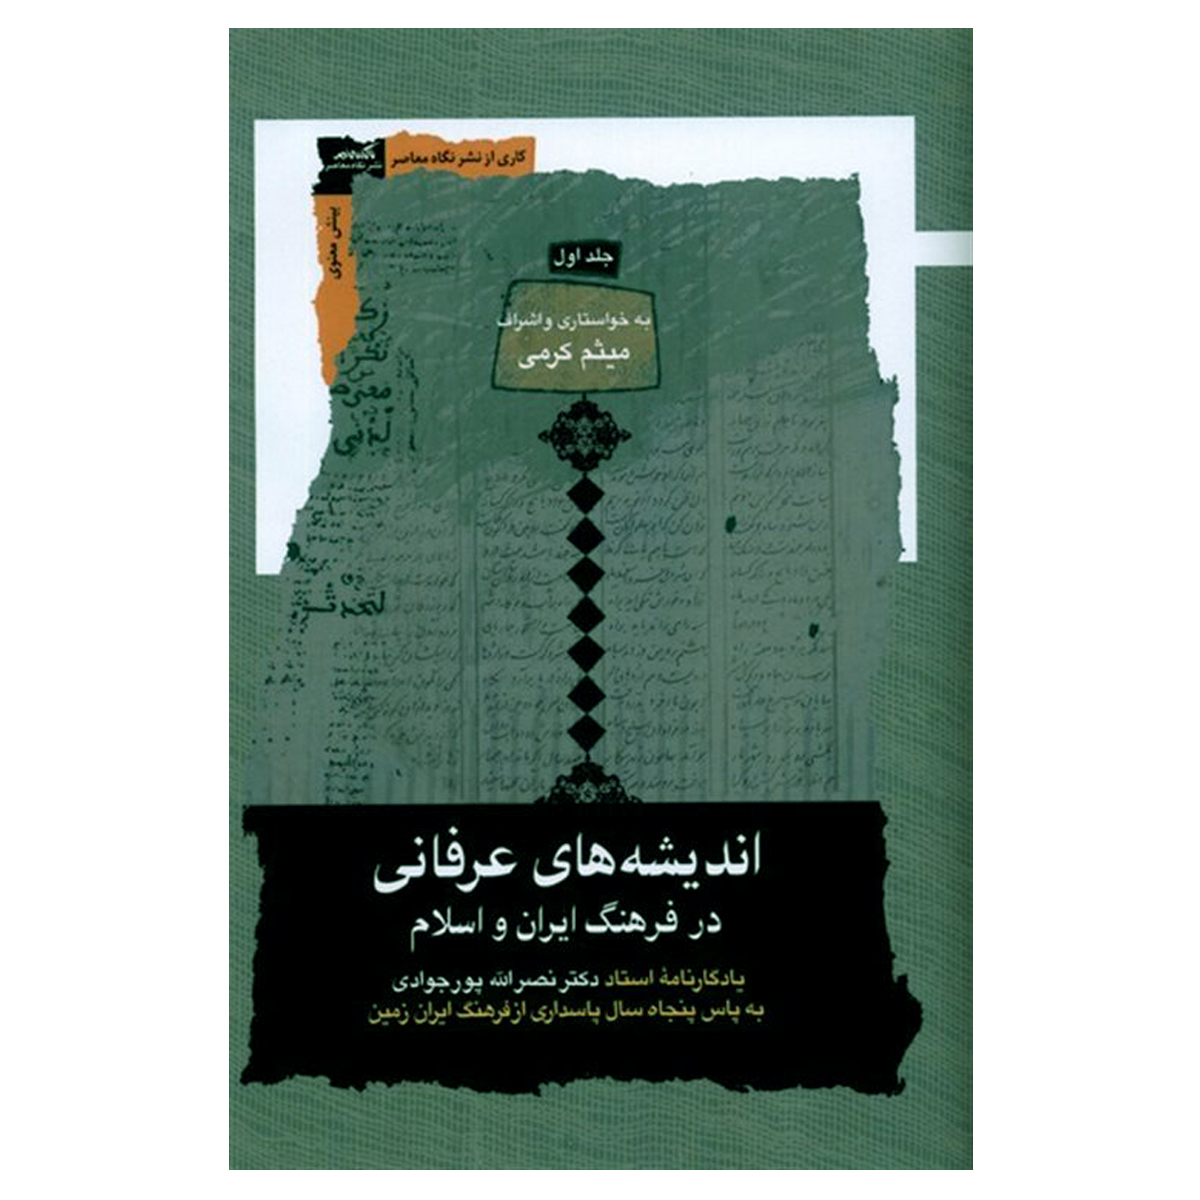 کتاب اندیشه های عرفانی در فرهنگ ایران و اسلام اثر میثم کرمی نشر نگاه معاصر 3 جلدی